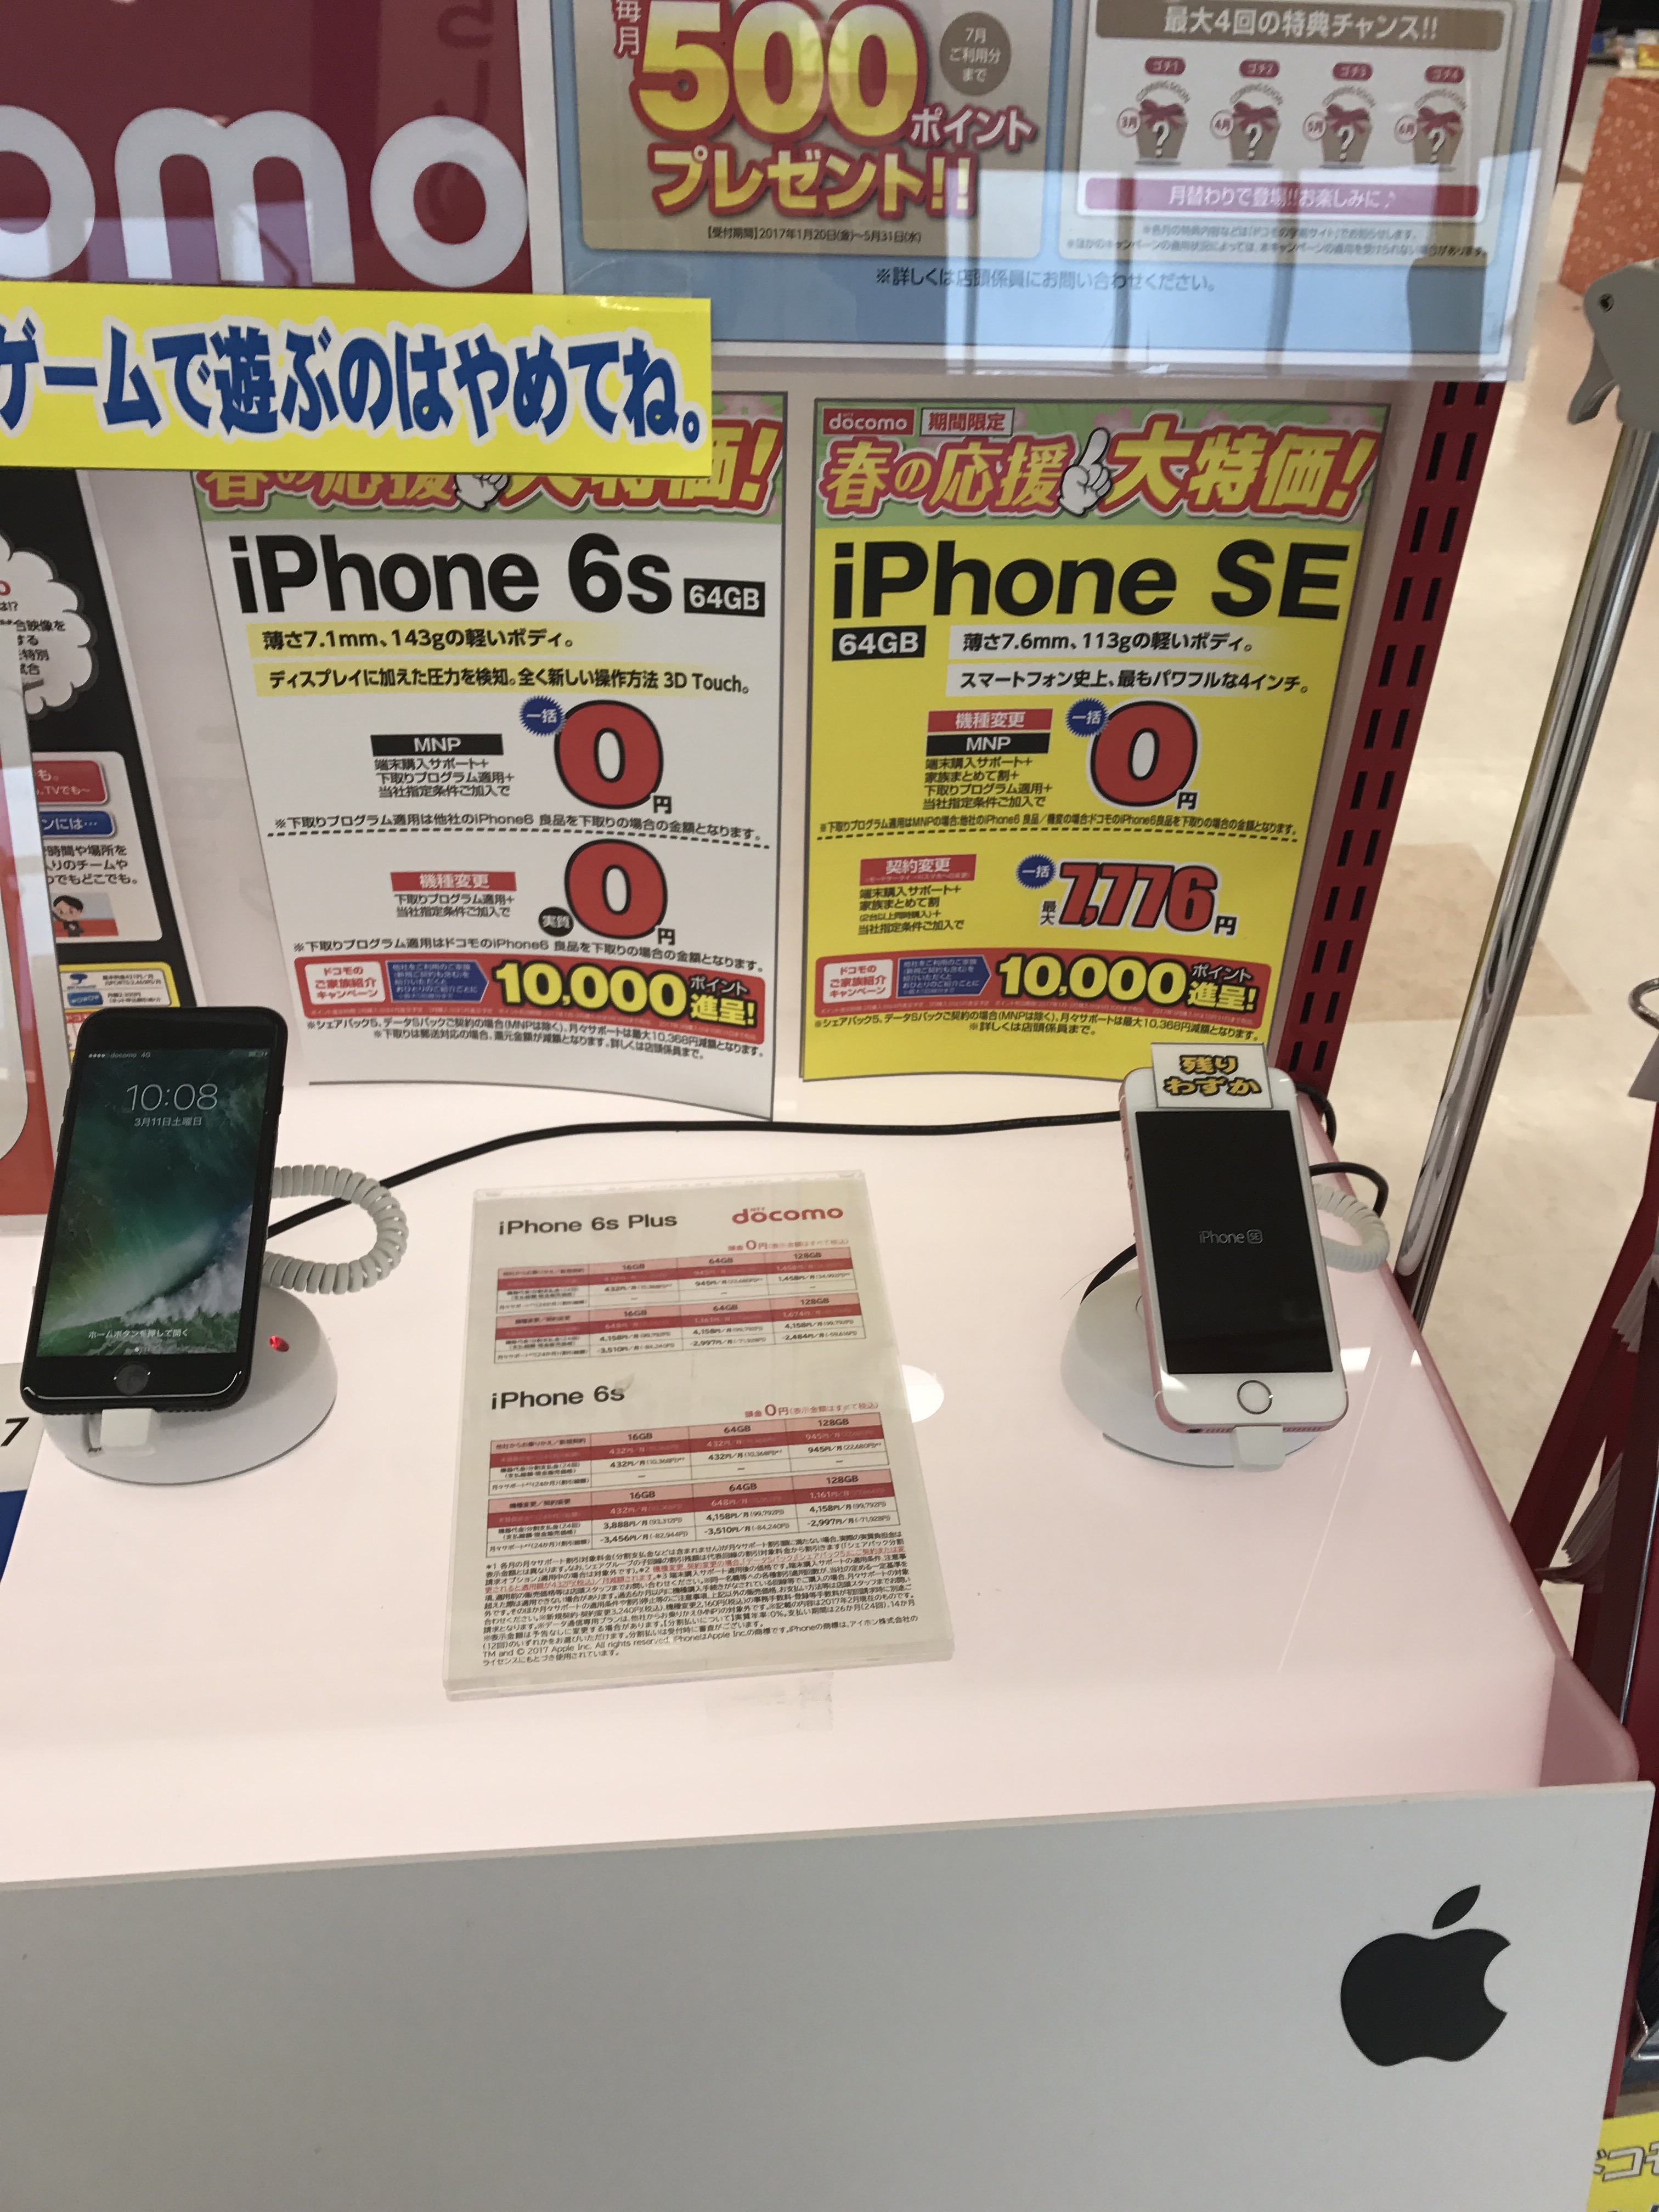 奈良県香芝店 エコールマミのエディオンでiphone6s一括0円 通信ソムリエの経験談 携帯乞食でスマホを乗り換えた方法と実際の収支